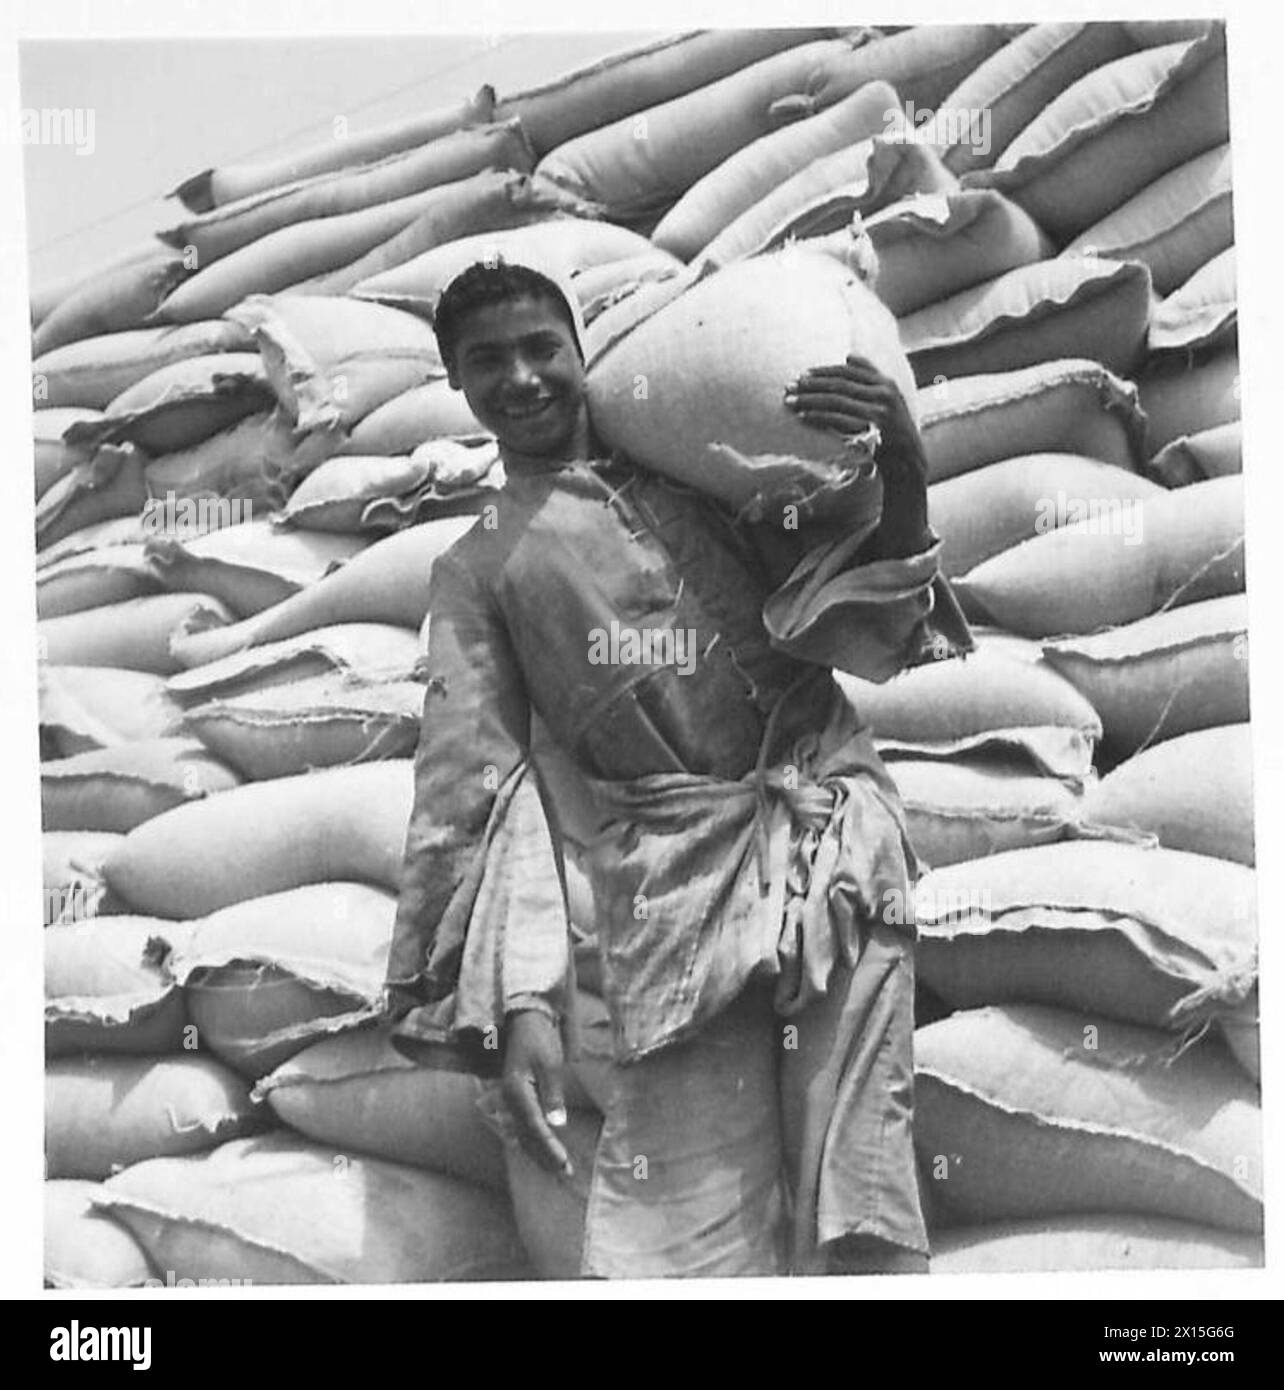 NAHRUNGSMITTELVORRÄTE FÜR DEN NAHEN OSTEN - ein ägyptischer Arbeiter an den Docks lächelt glücklich über die Aussicht, dass Weizen für ihn und seine Landsleute reichlicher sein könnte Stockfoto